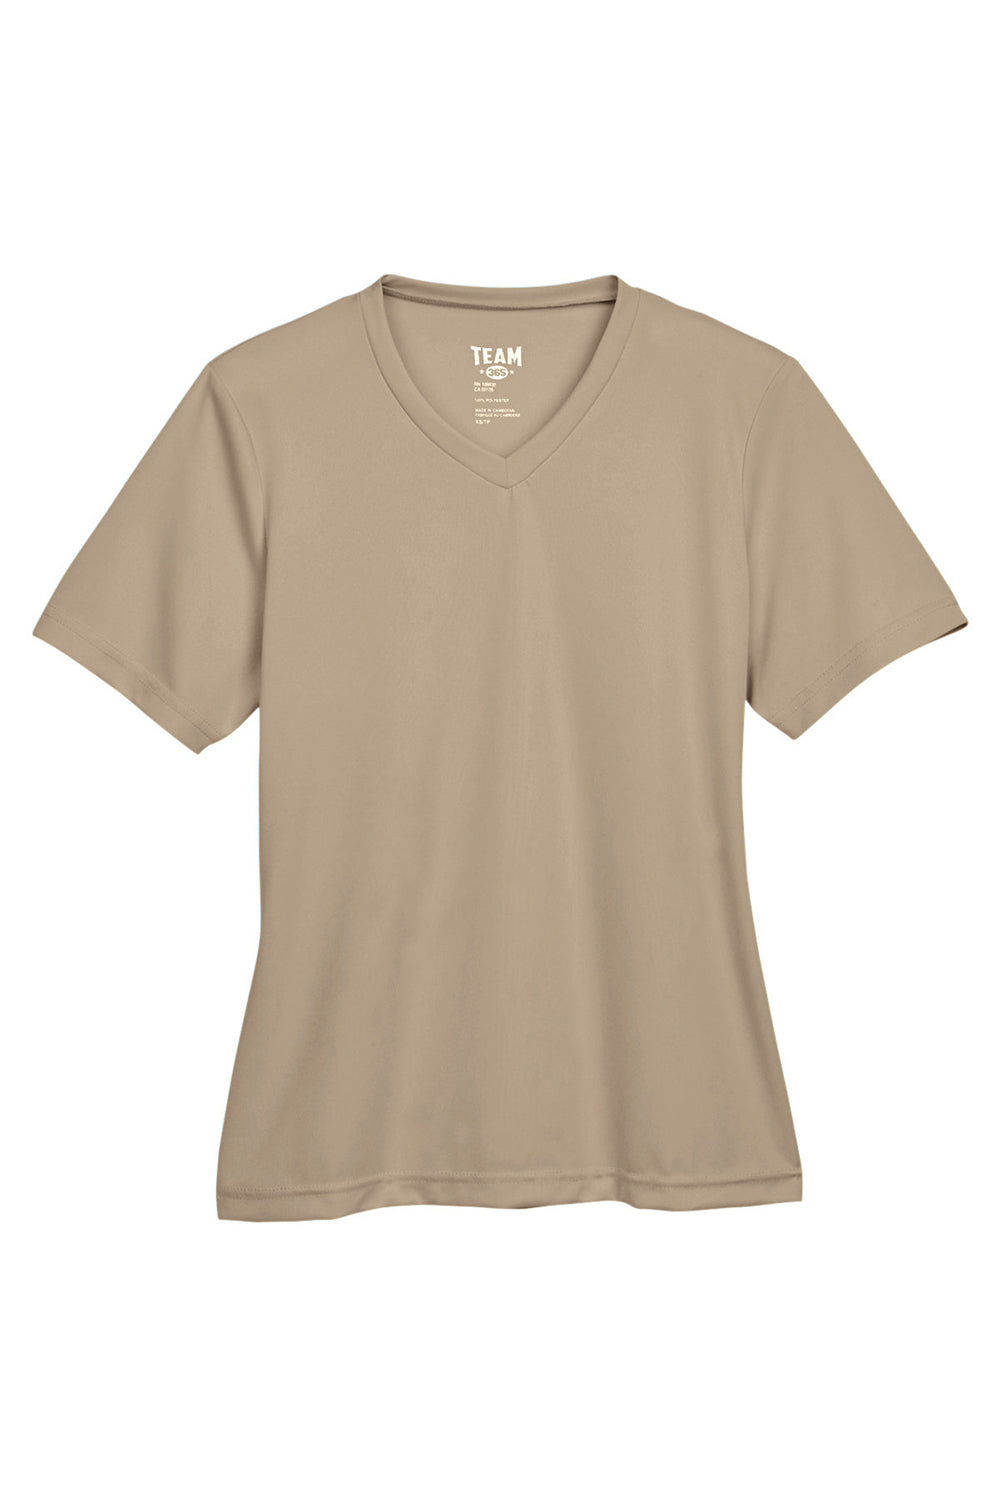 Team 365 TT11W Womens Zone Performance Moisture Wicking Short Sleeve V-Neck T-Shirt Desert Khaki Flat Front